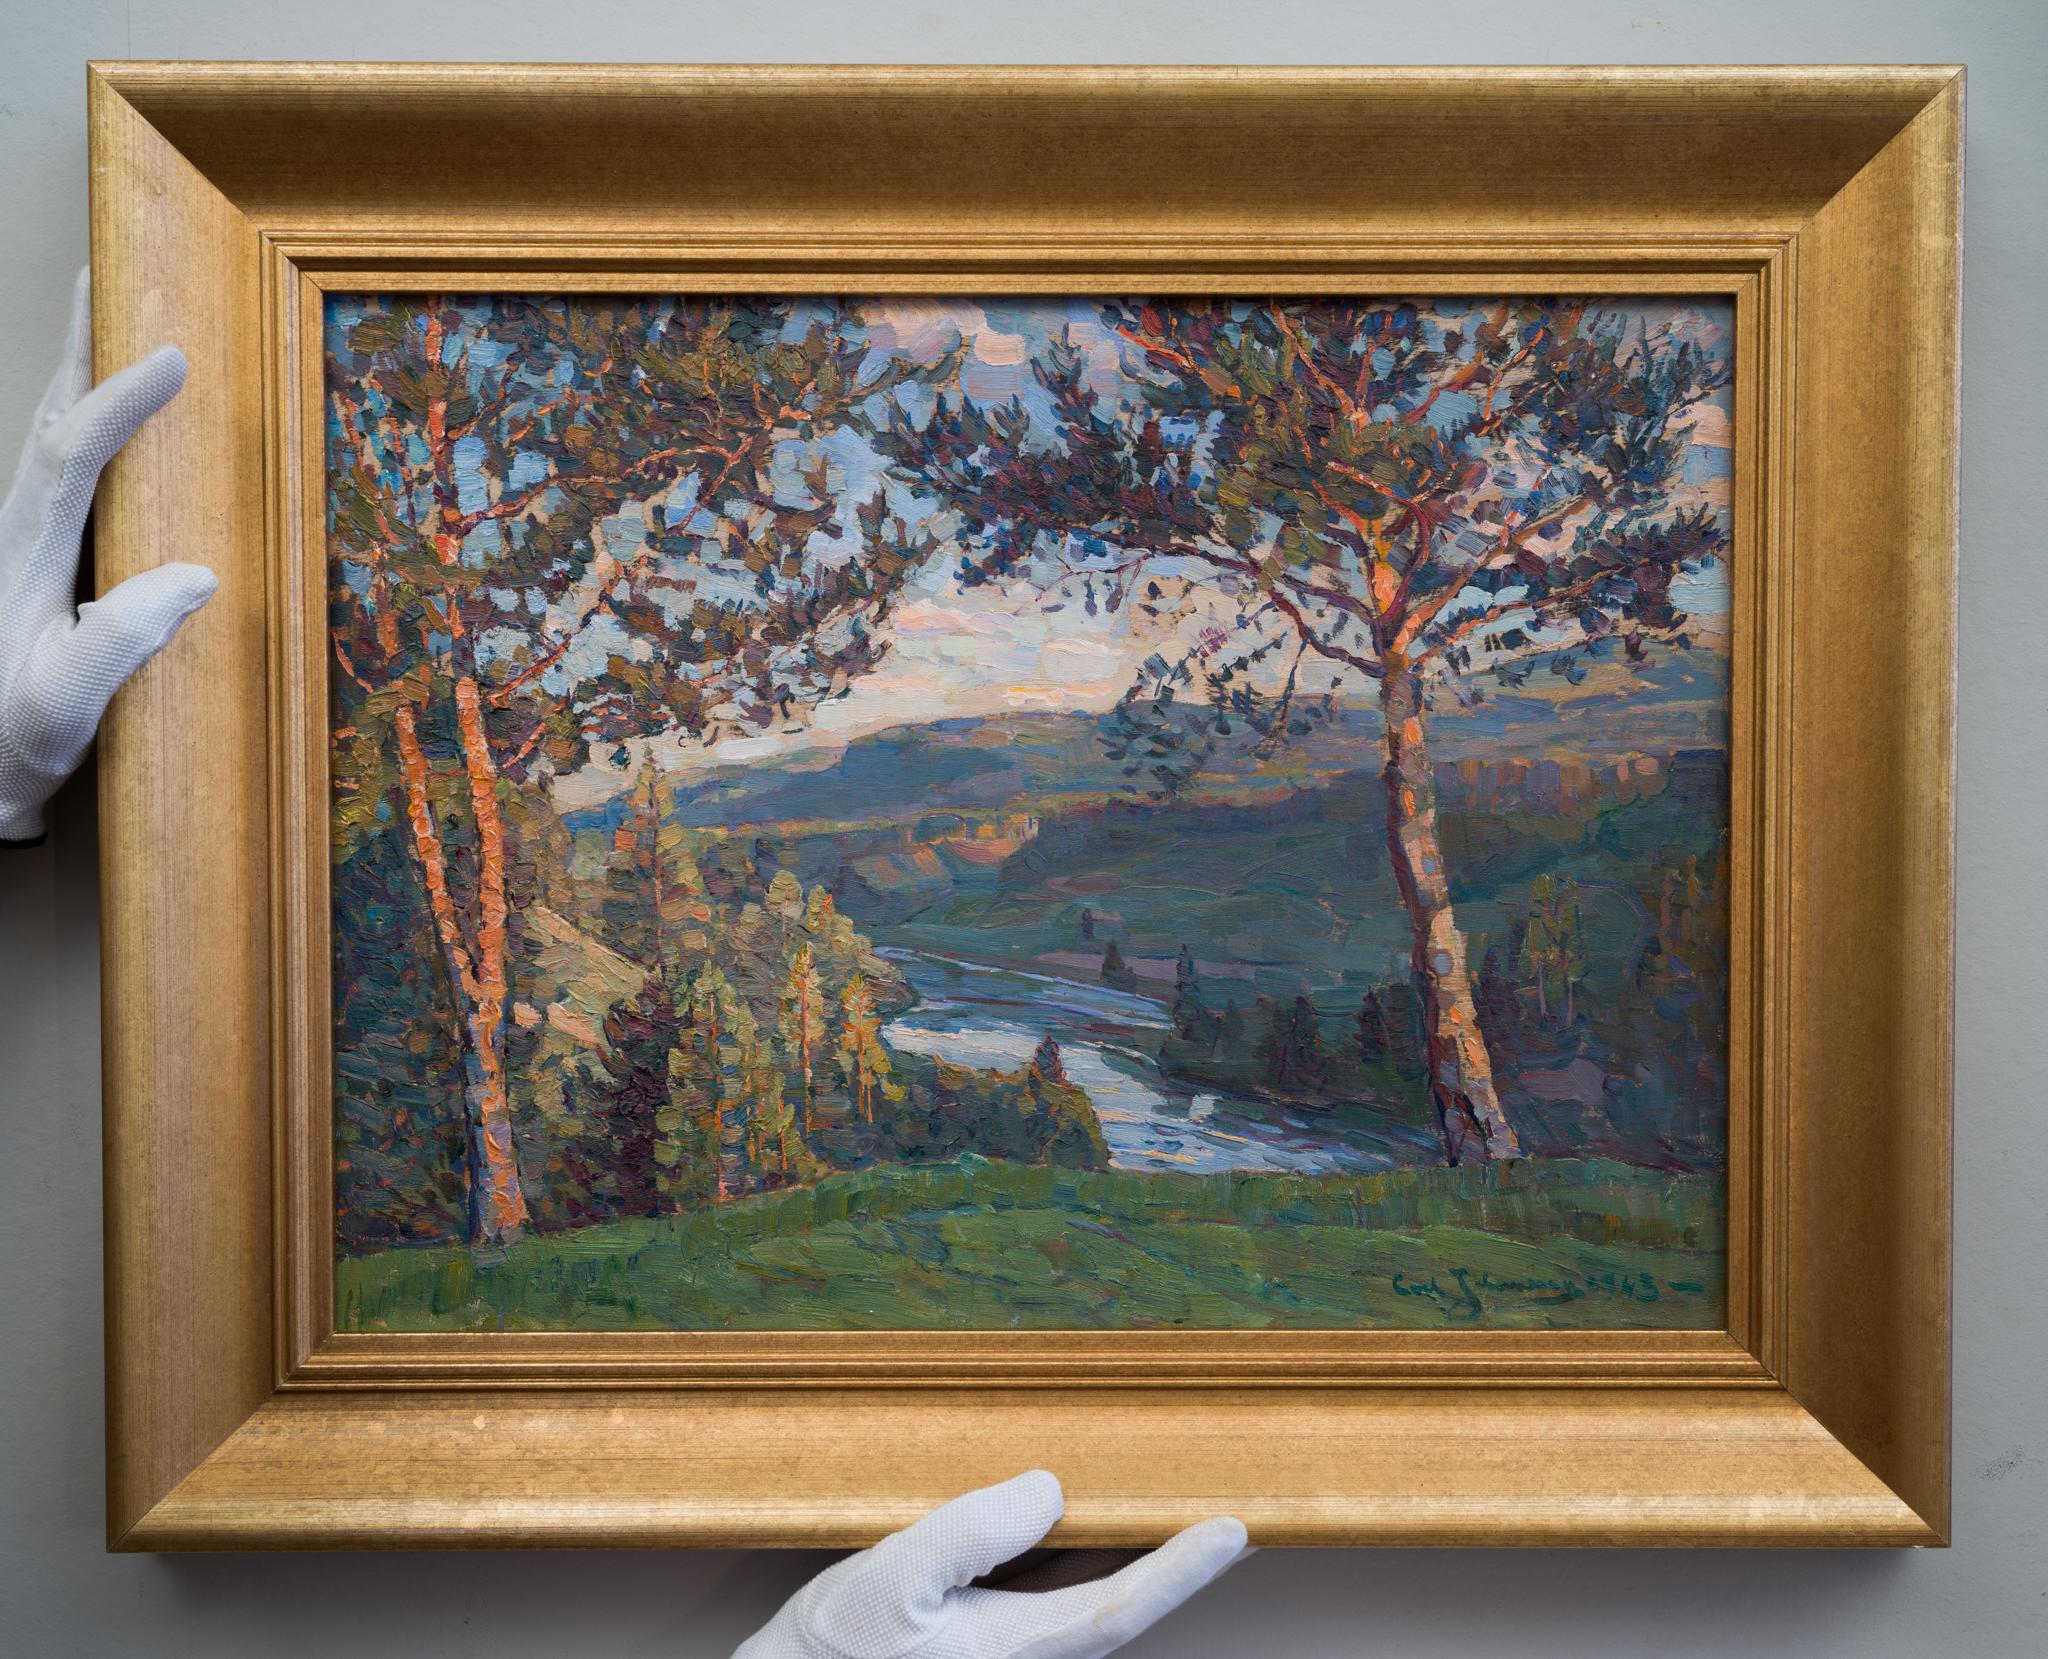 A Tranquil Landscape View, 1943 von „Ultramarine Johansson“ – Painting von Carl Johansson 